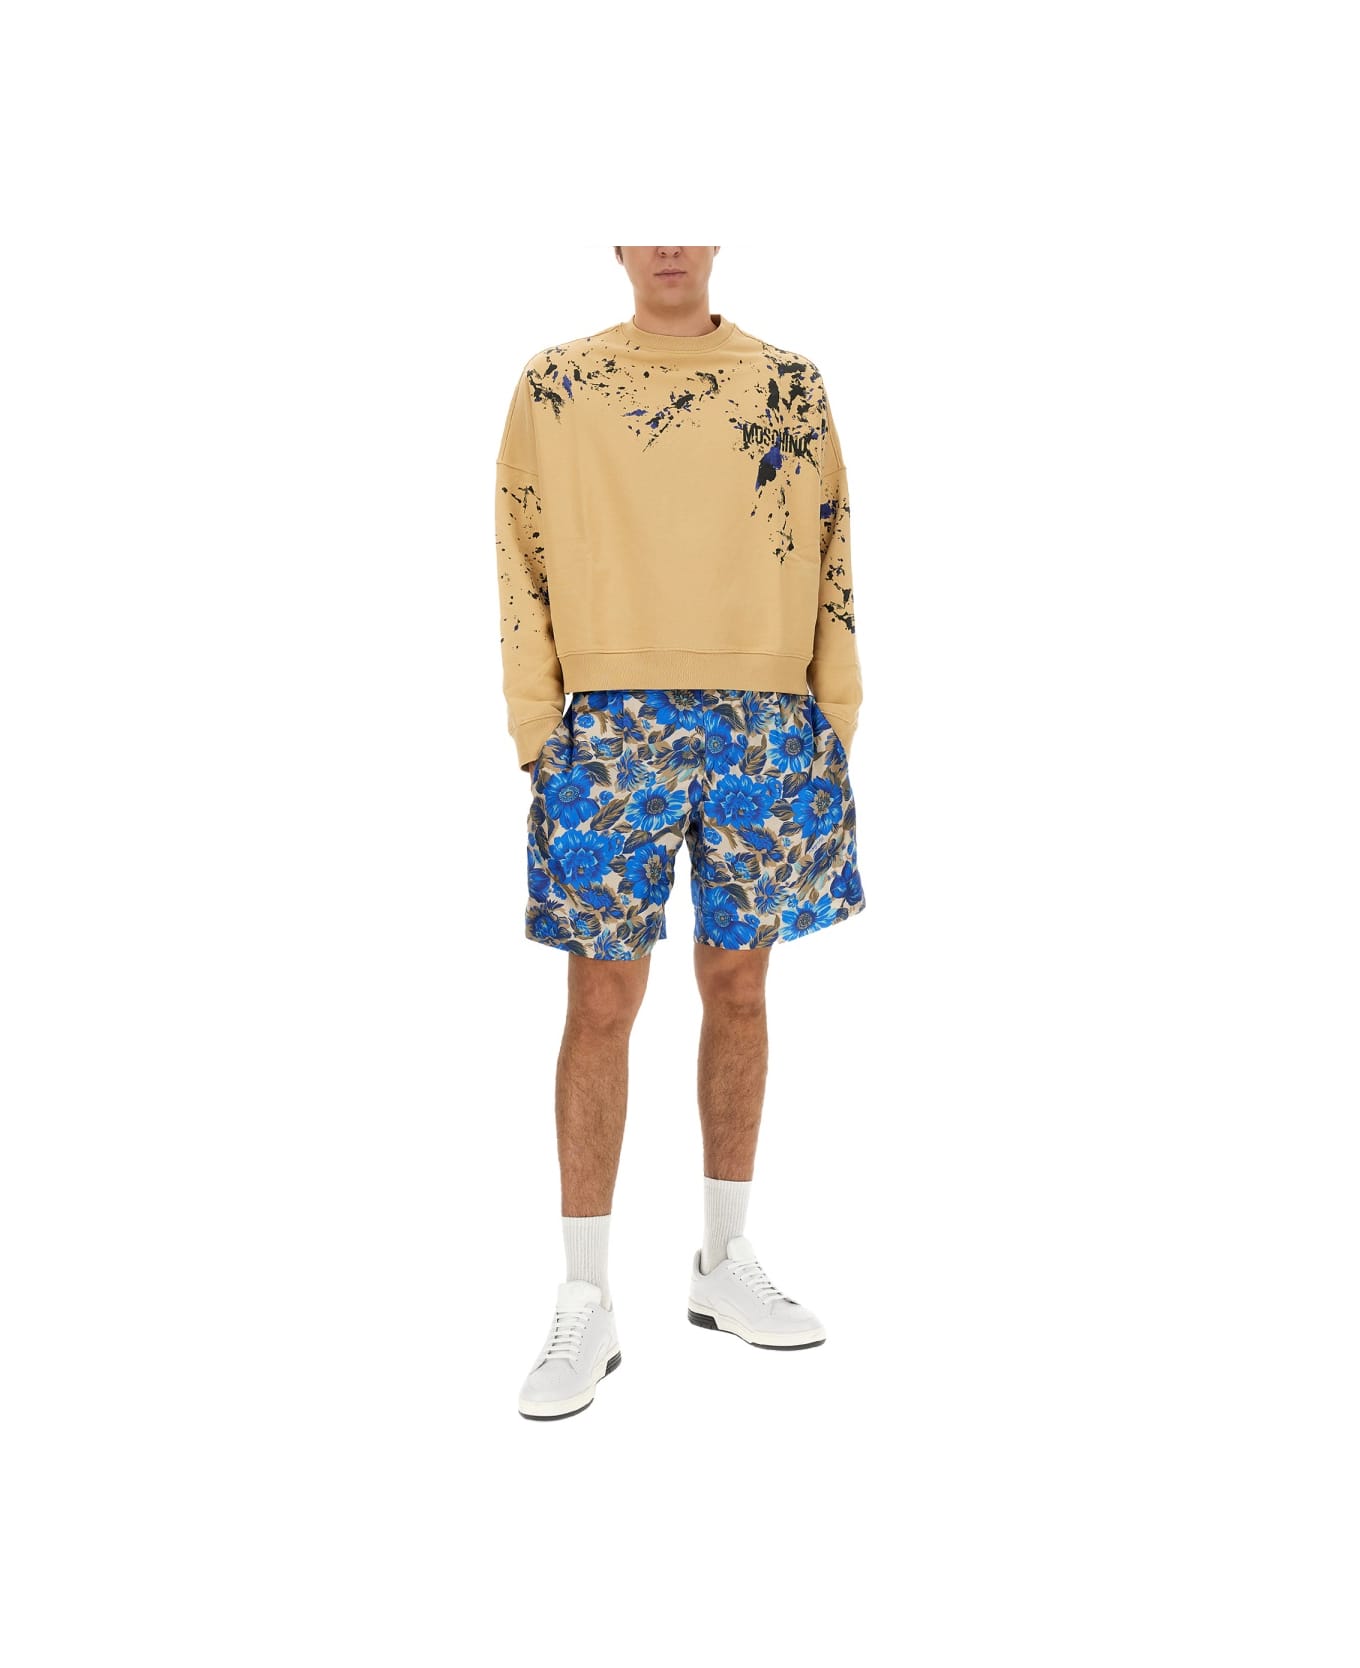 Moschino Cotton Sweatshirt - BEIGE